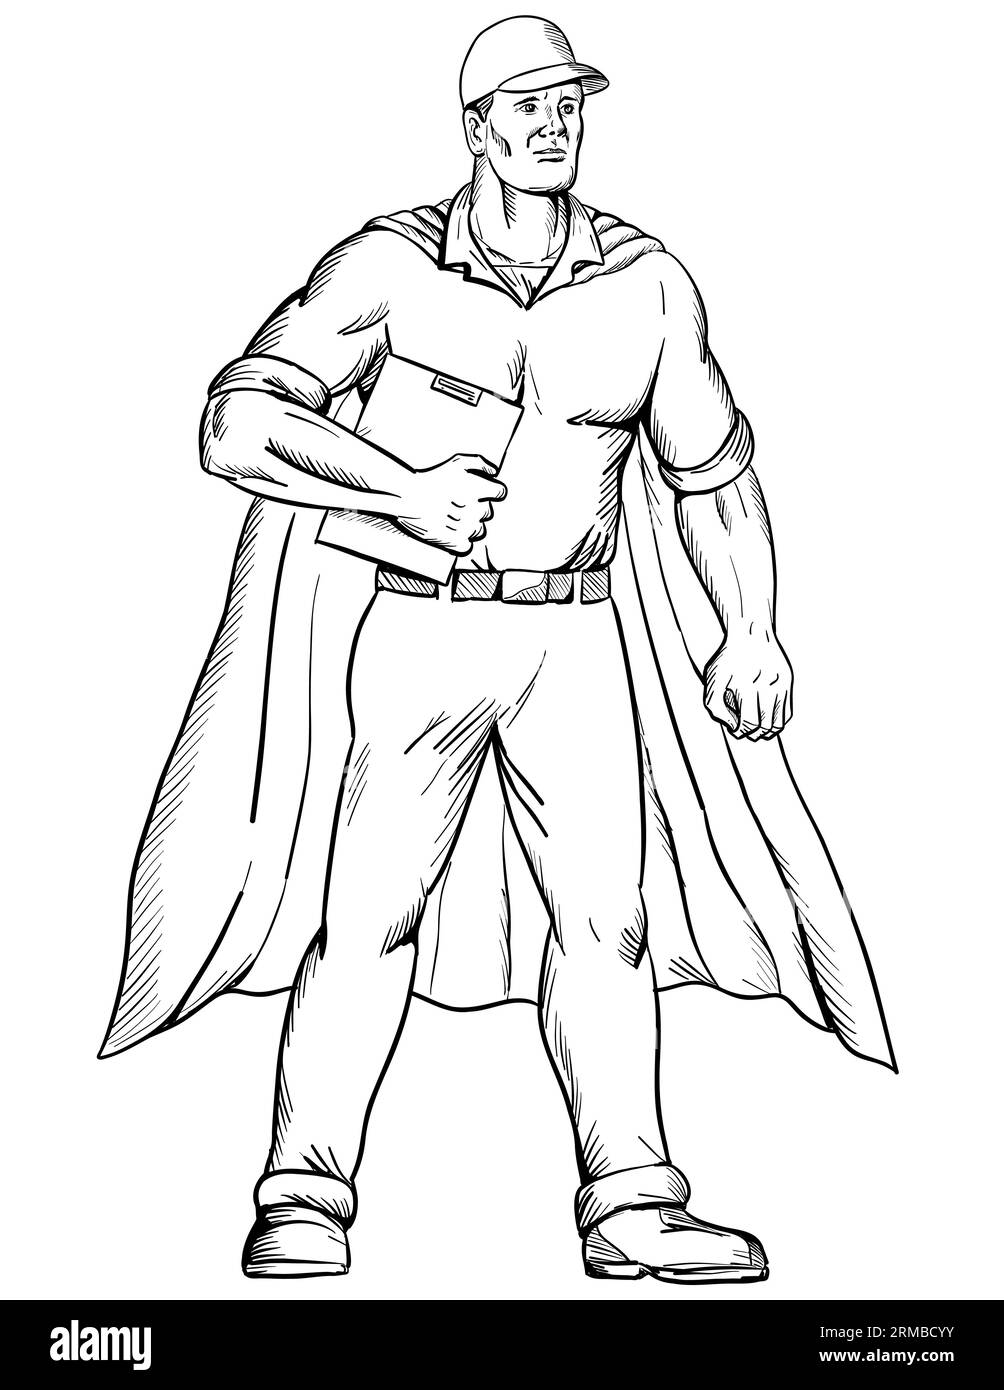 Zeichnung einer Zeichnung im Skizzenstil Illustration eines Arbeiters als Superheld, der ein cape trägt und ein Klemmbrett hält, das von vorne gesehen auf isoliertem weißem Hintergrund steht Stockfoto